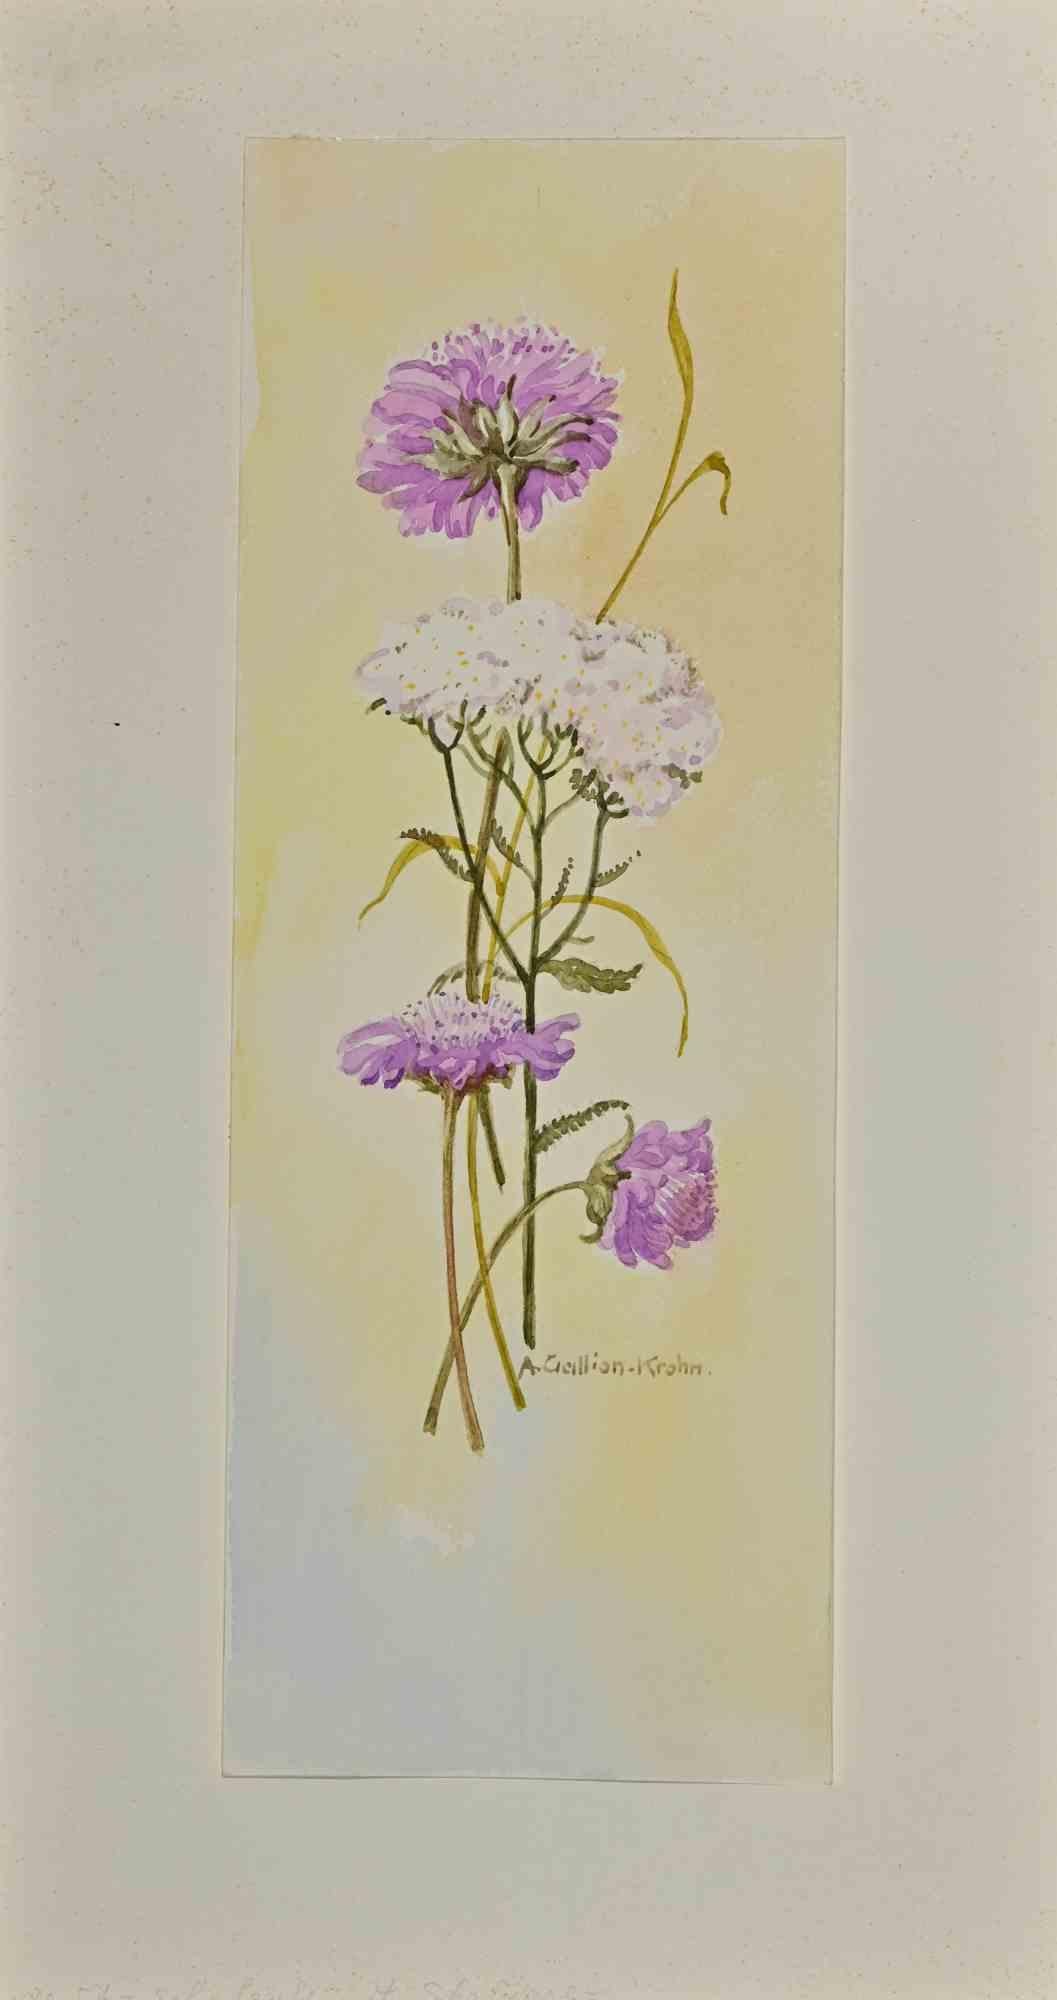 Blumen ist ein Original-Aquarell von Anne Gallion-Krohn aus der Mitte des 20. Jahrhunderts.

Das Kunstwerk ist in gutem Zustand und enthält ein cremefarbenes Passepartout aus Karton (39,5x21,3 cm).

Handsigniert vom Künstler in der rechten unteren